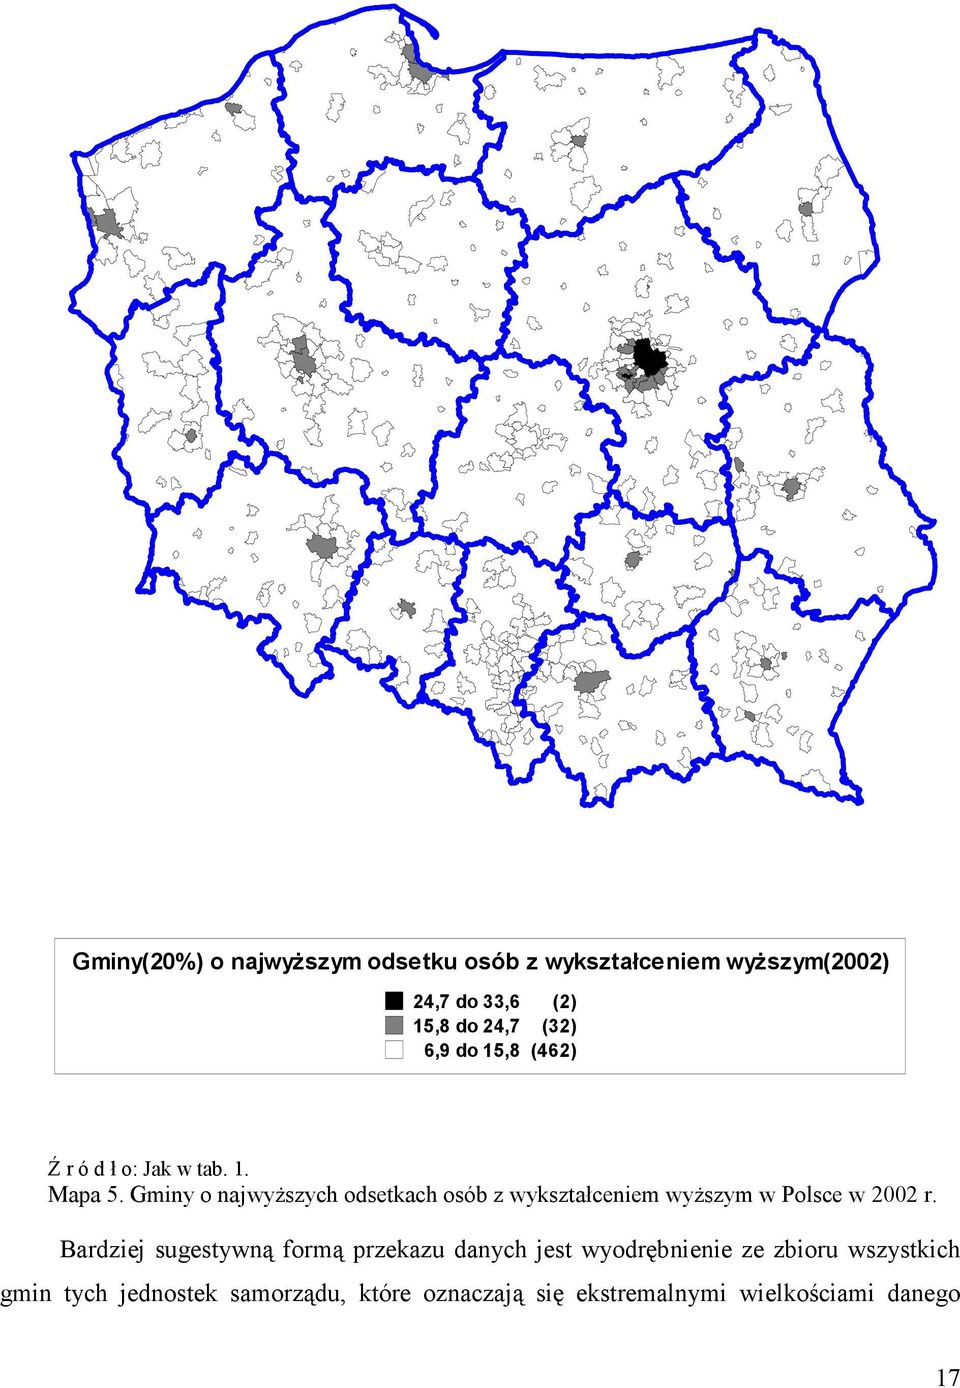 Gminy o najwyższych odsetkach osób z wykształceniem wyższym w Polsce w 2002 r.